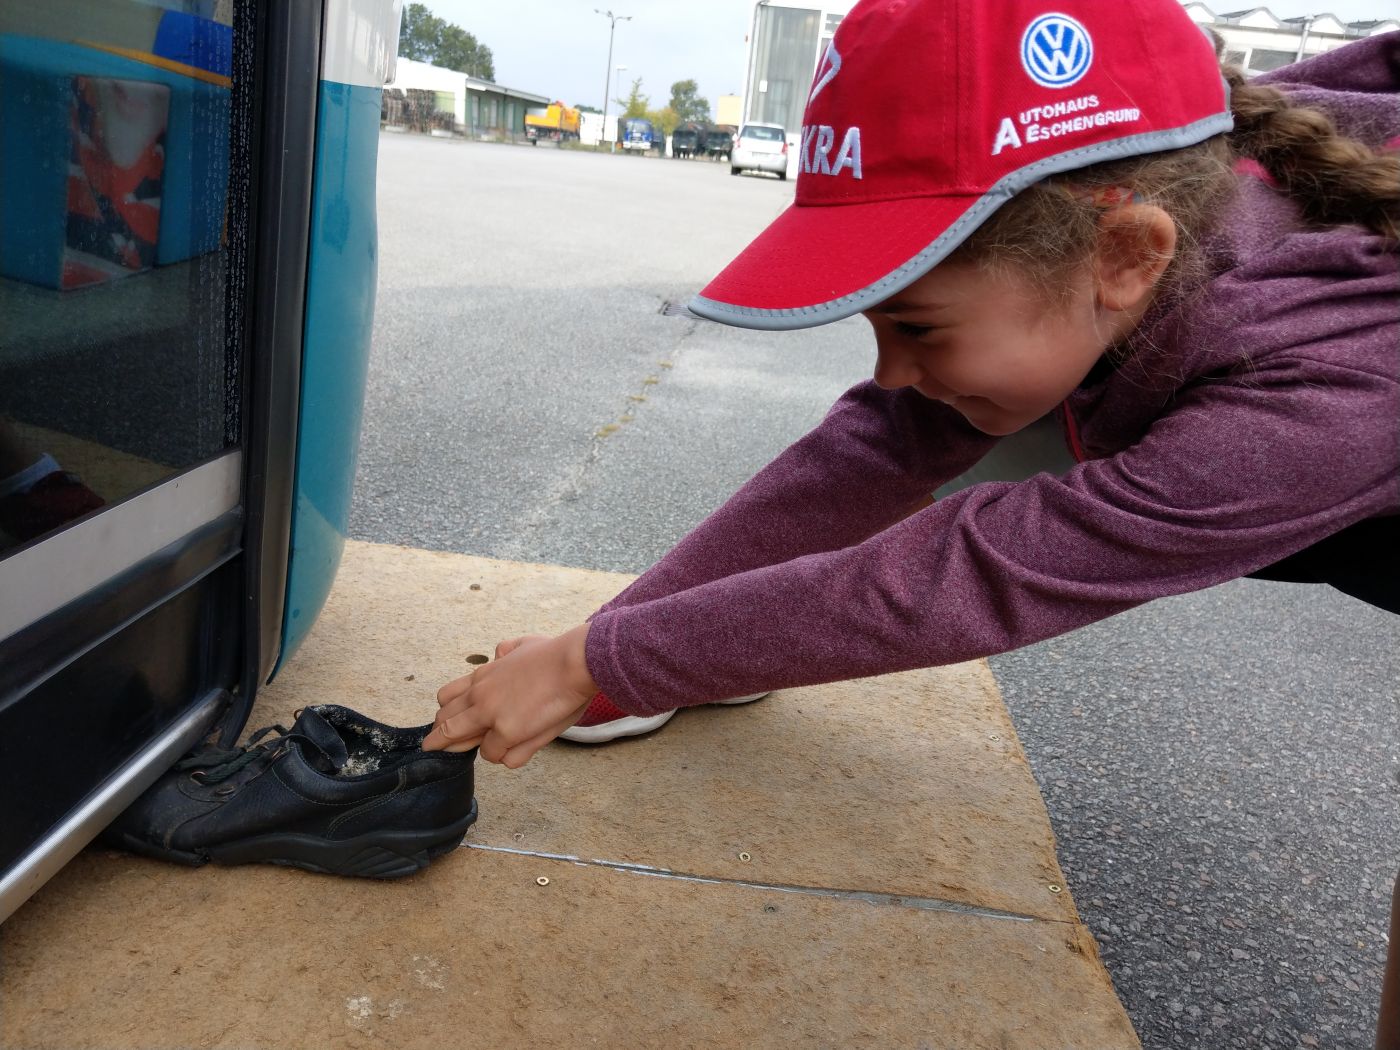 Mädchen beim Versuch, einen eingeklemmten Schuh unter einem Bus hervorzuziehen